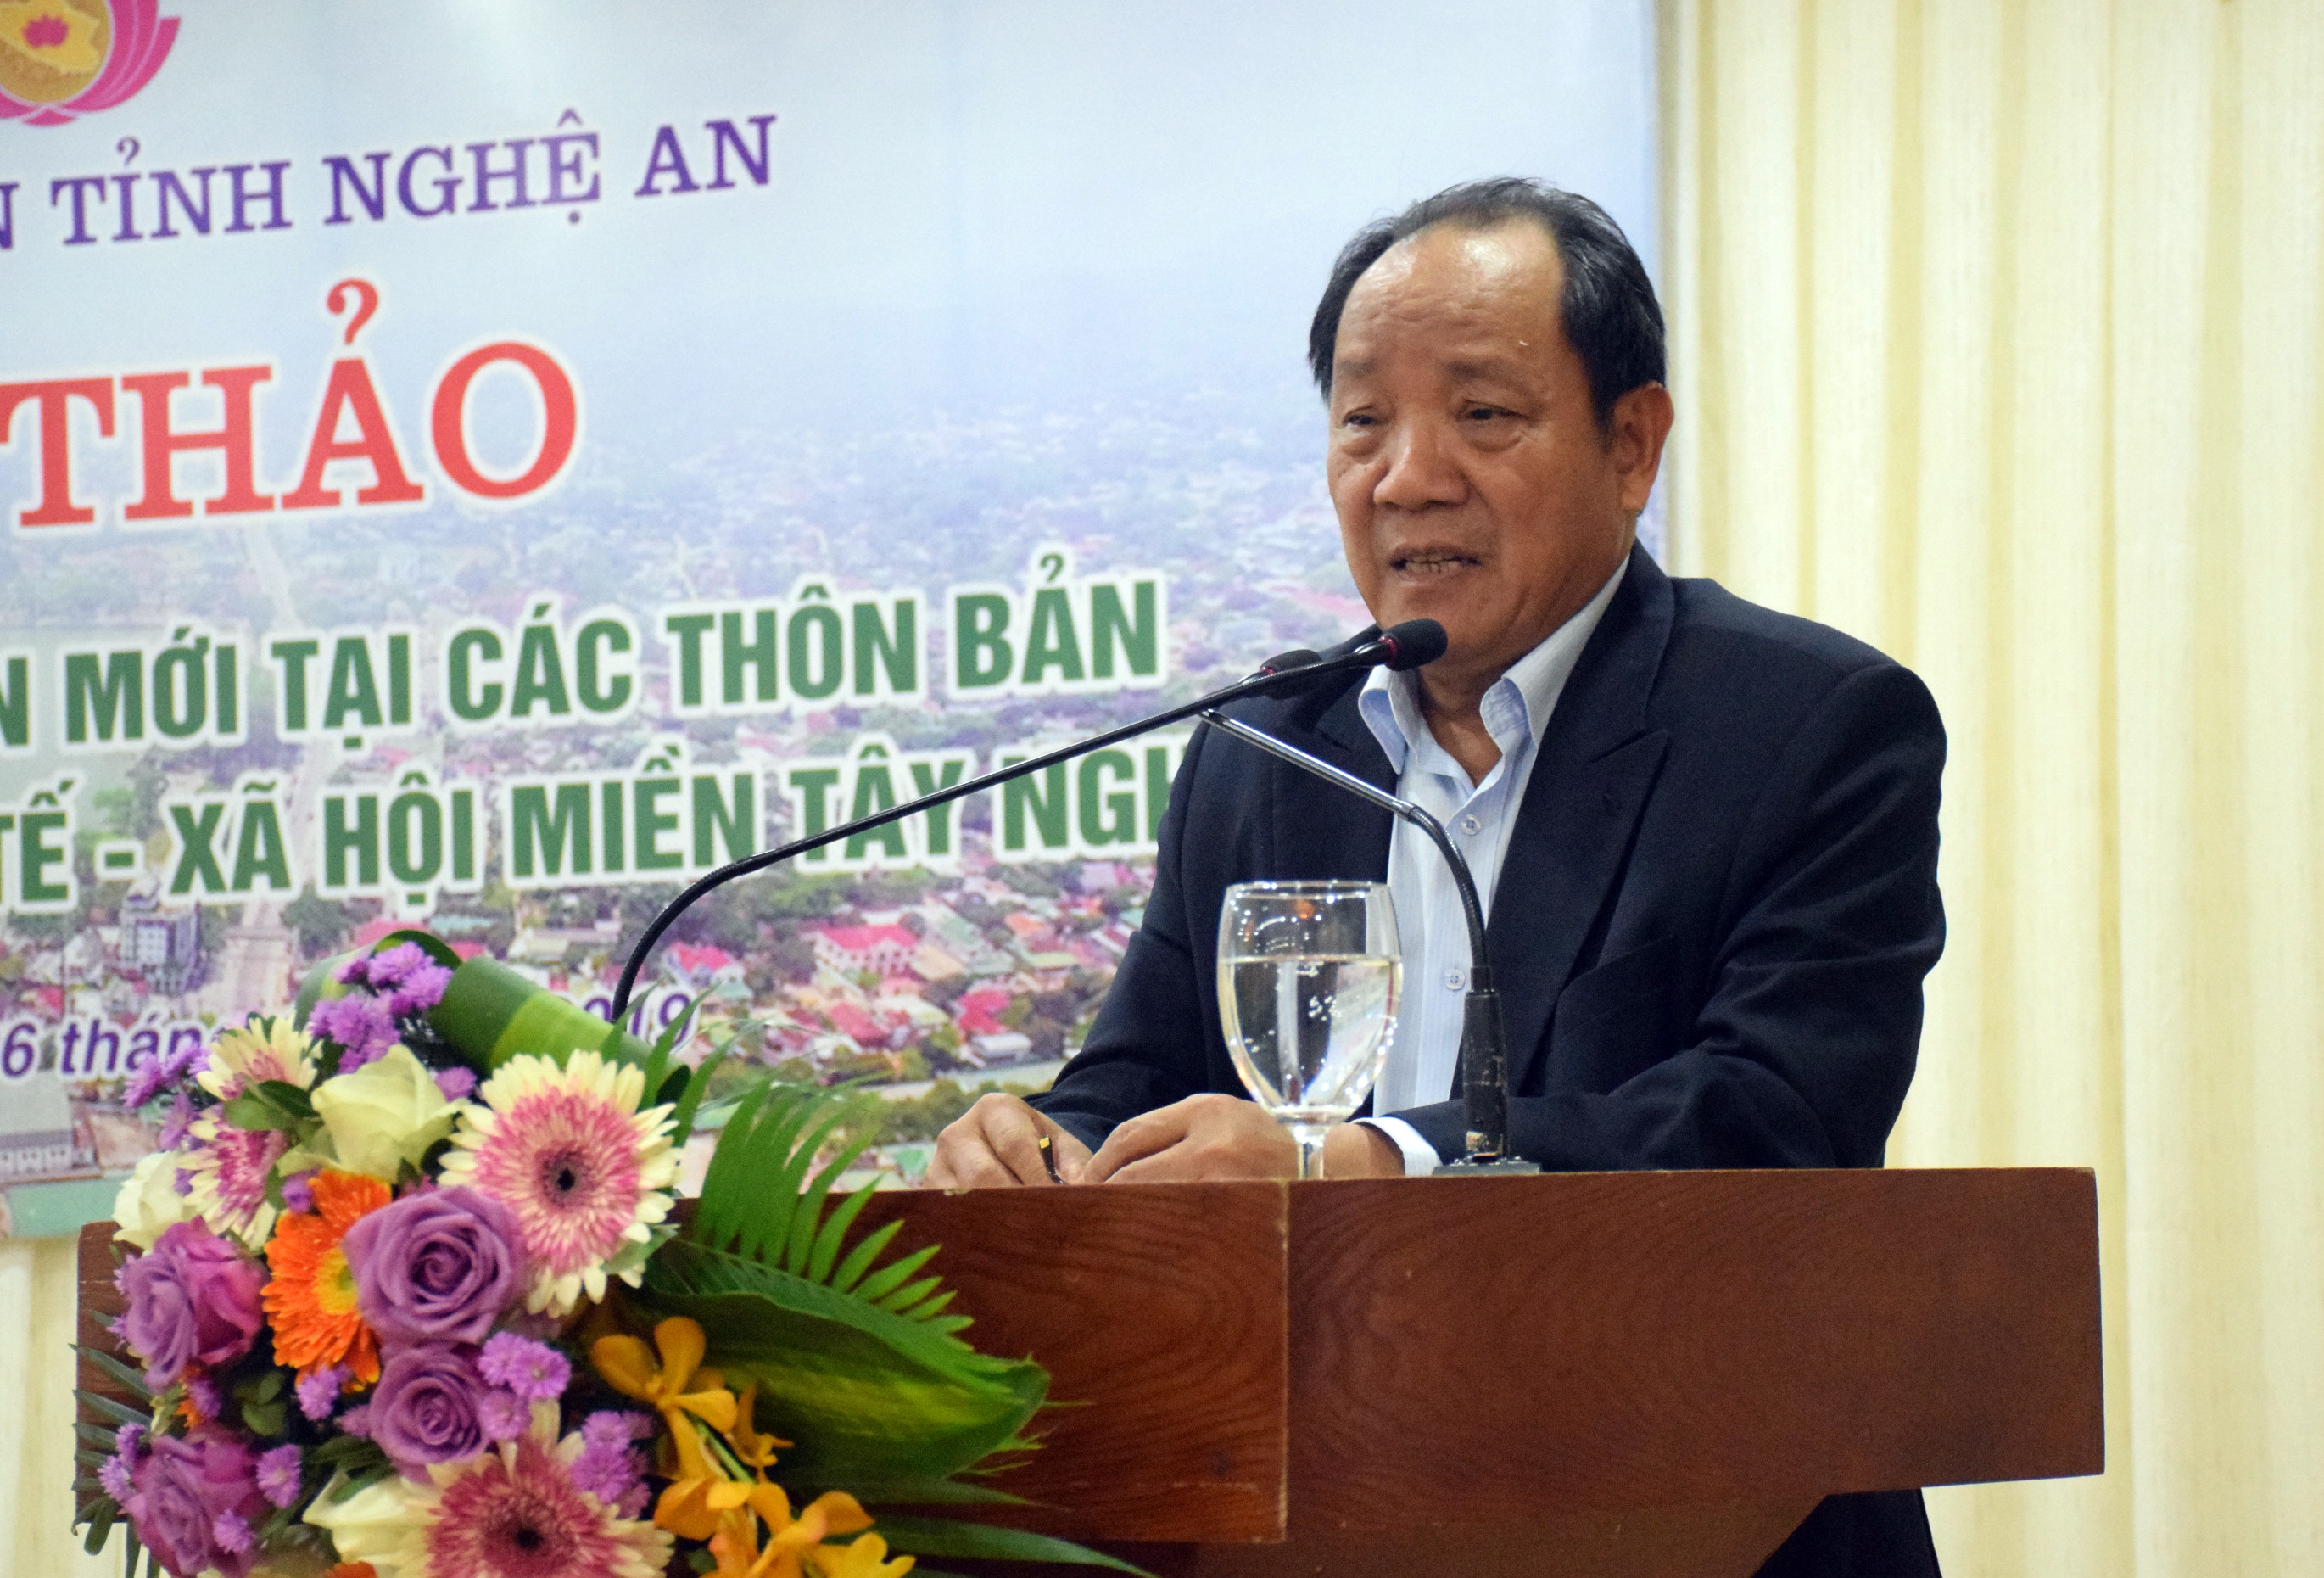 Ông Hồ Xuân Hùng – Nguyên Thứ trưởng Bộ Nông nghiệp và PTNT, Chủ tịch Tổng hội NN&PTNT Việt Nam phát biểu tại hội thảo. Ảnh: Xuân Hoàng